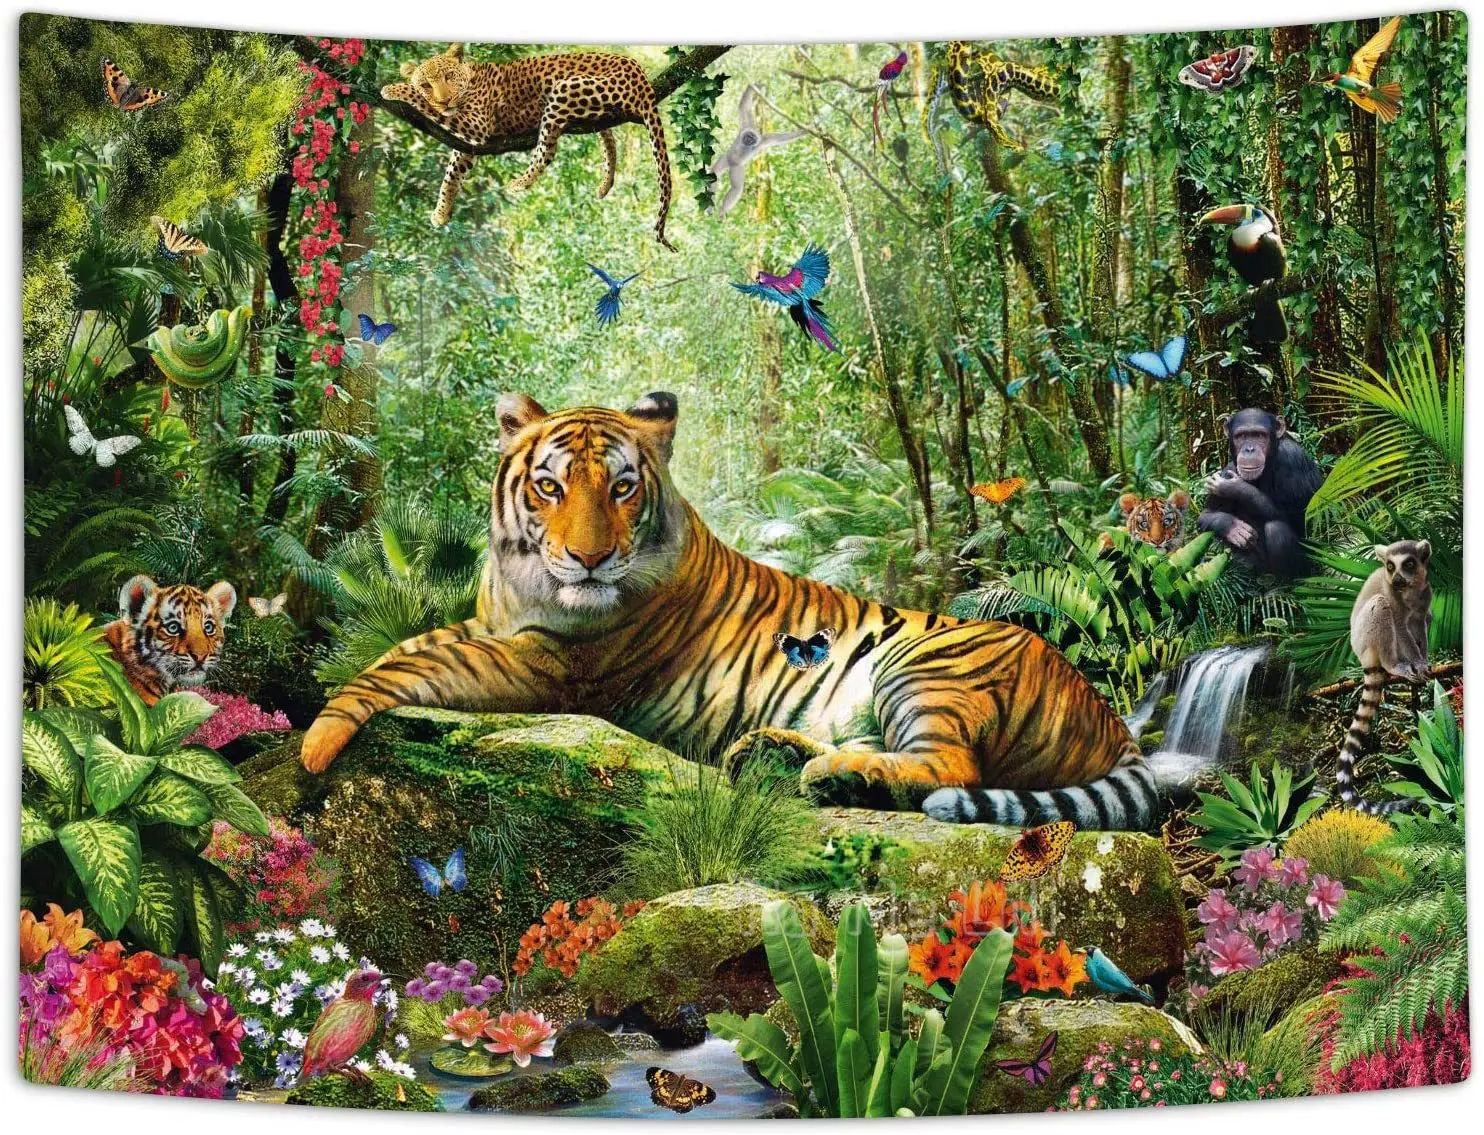 

Tiger Jungle Tapestry Forest Animal In Tropical Rainforest Landscape Art For Room Dorm Decor bedspread Tv Backdrop College